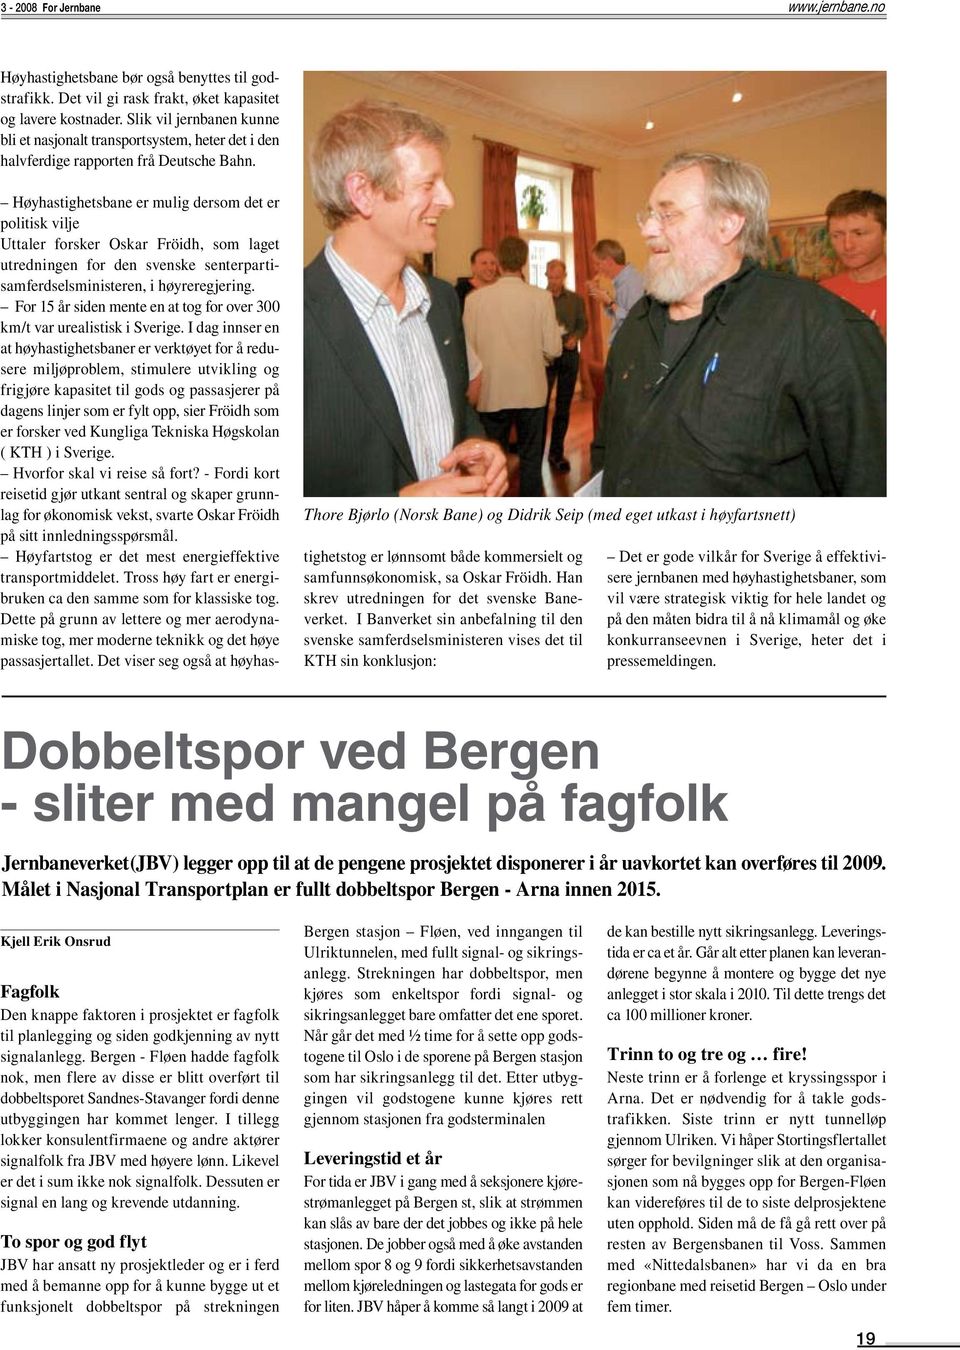 Thore Bjørlo (Norsk Bane) og Didrik Seip (med eget utkast i høyfartsnett) Høyhastighetsbane er mulig dersom det er politisk vilje Uttaler forsker Oskar Fröidh, som laget utredningen for den svenske